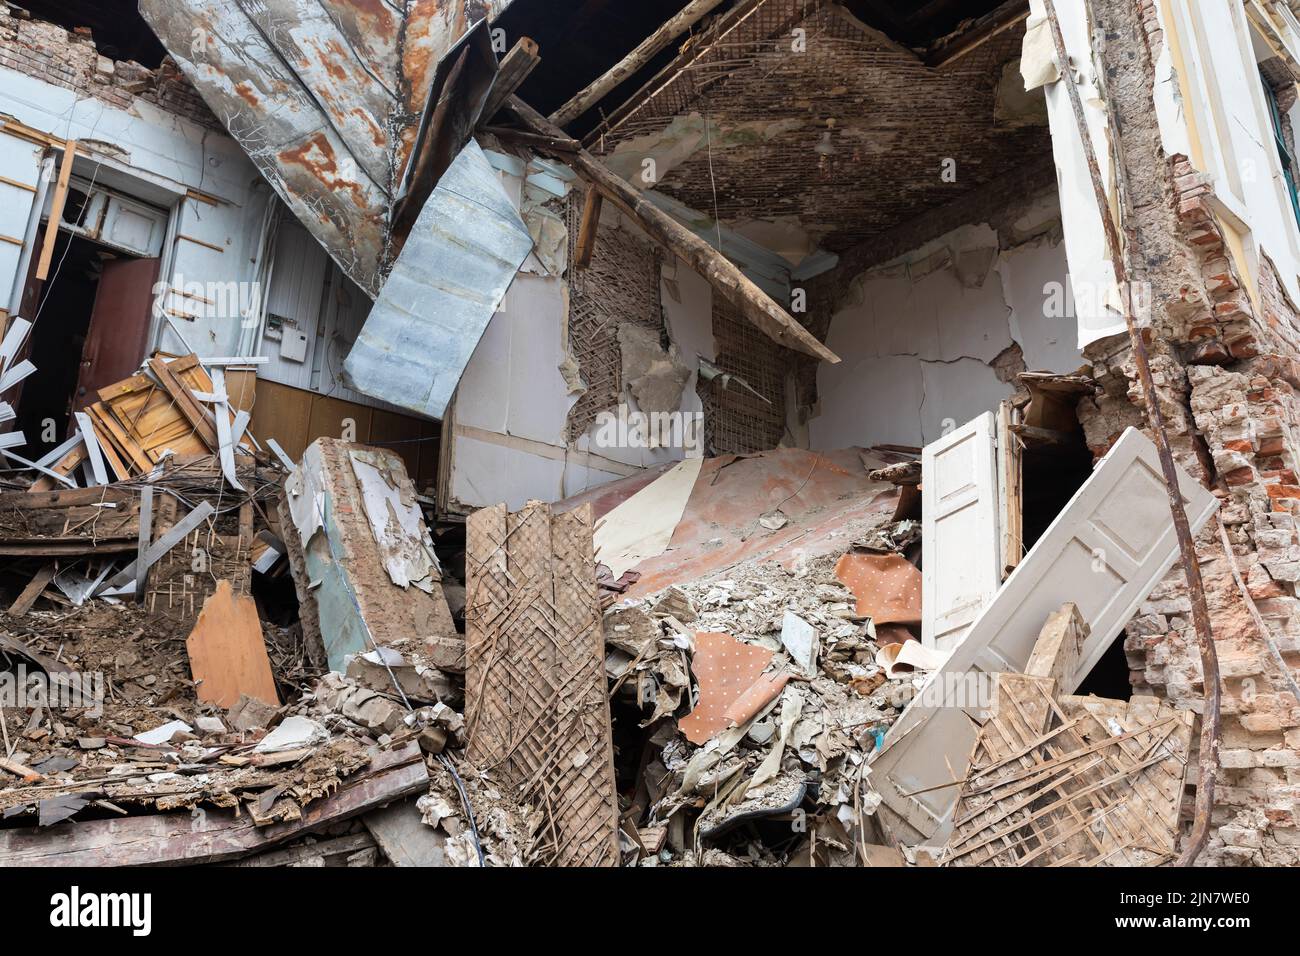 Un apartamento en ruinas, y fragmentos de estructuras de edificios están esparcidos por todas partes. Edificio destruido en el centro histórico en Kharkiv, Ucrania - 1 Ago 2022 Foto de stock